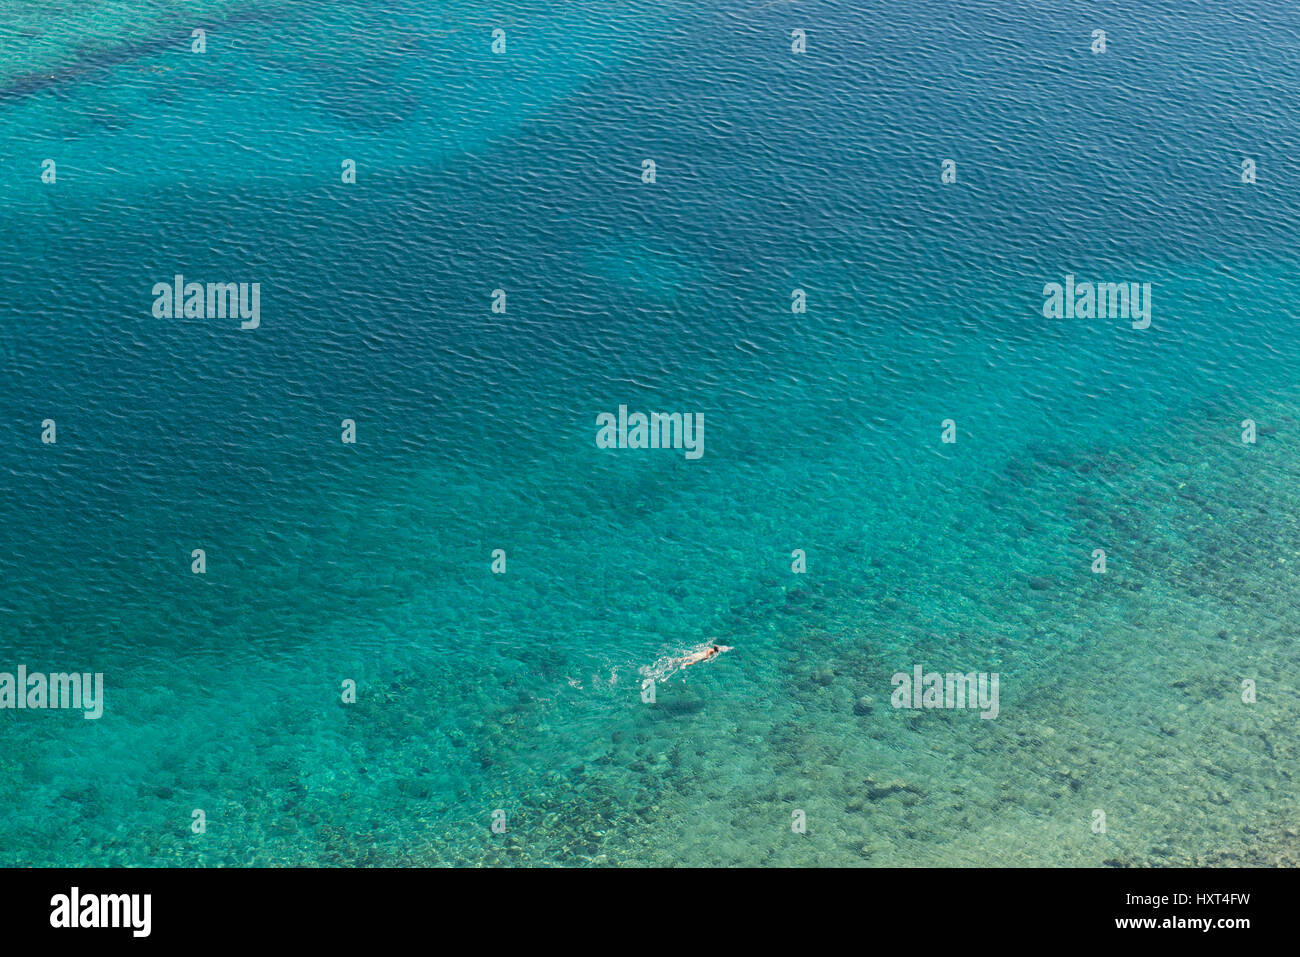 erhöhte Ansicht auf einsamen Schwimmer in azurblauem Wasser, Insel Kastellorizo,Dodekanes, Griechenland Stock Photo